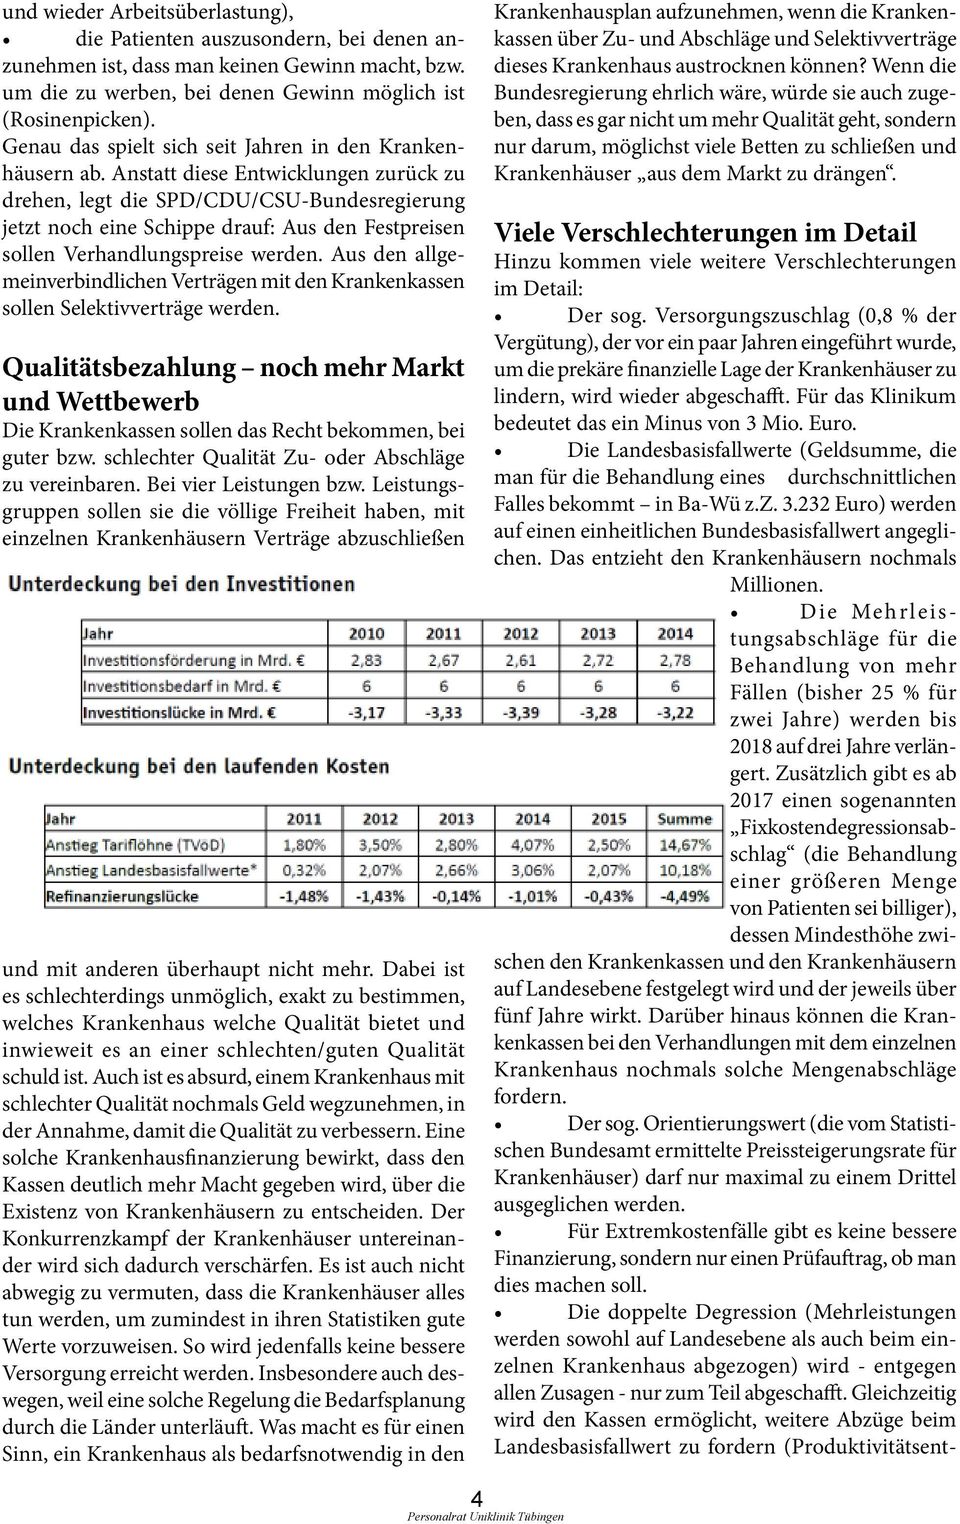 Anstatt diese Entwicklungen zurück zu drehen, legt die SPD/CDU/CSU-Bundesregierung jetzt noch eine Schippe drauf: Aus den Festpreisen sollen Verhandlungspreise werden.